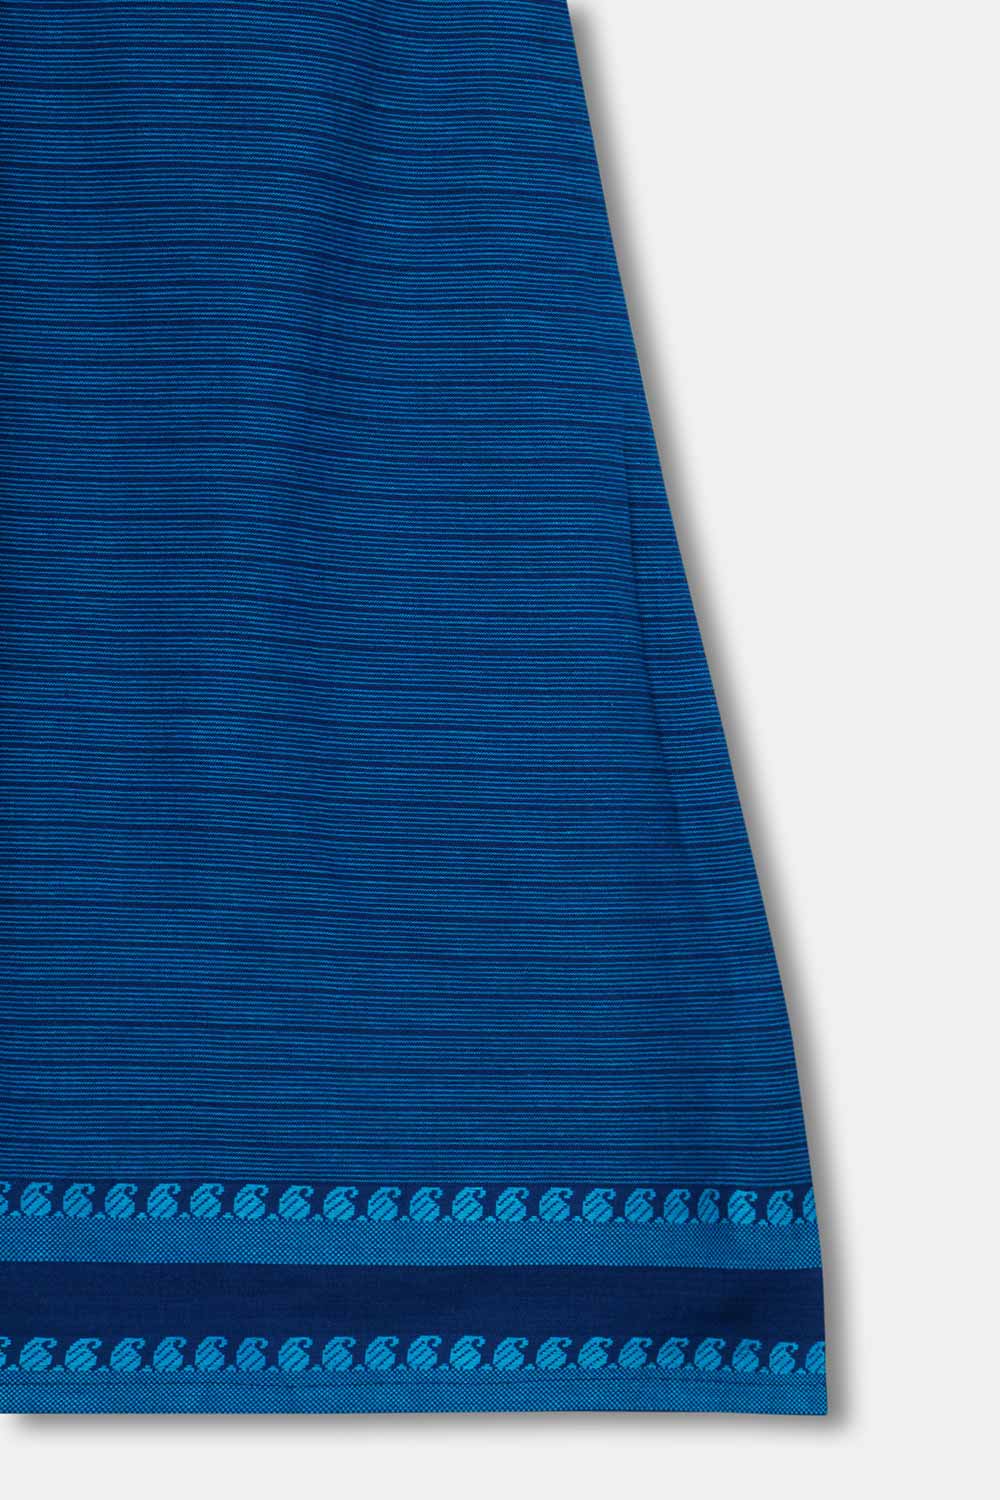 Chittythalli Girls Ethnic Wear Pavadai Set Cotton  Regular Fit  - Blue - PS60